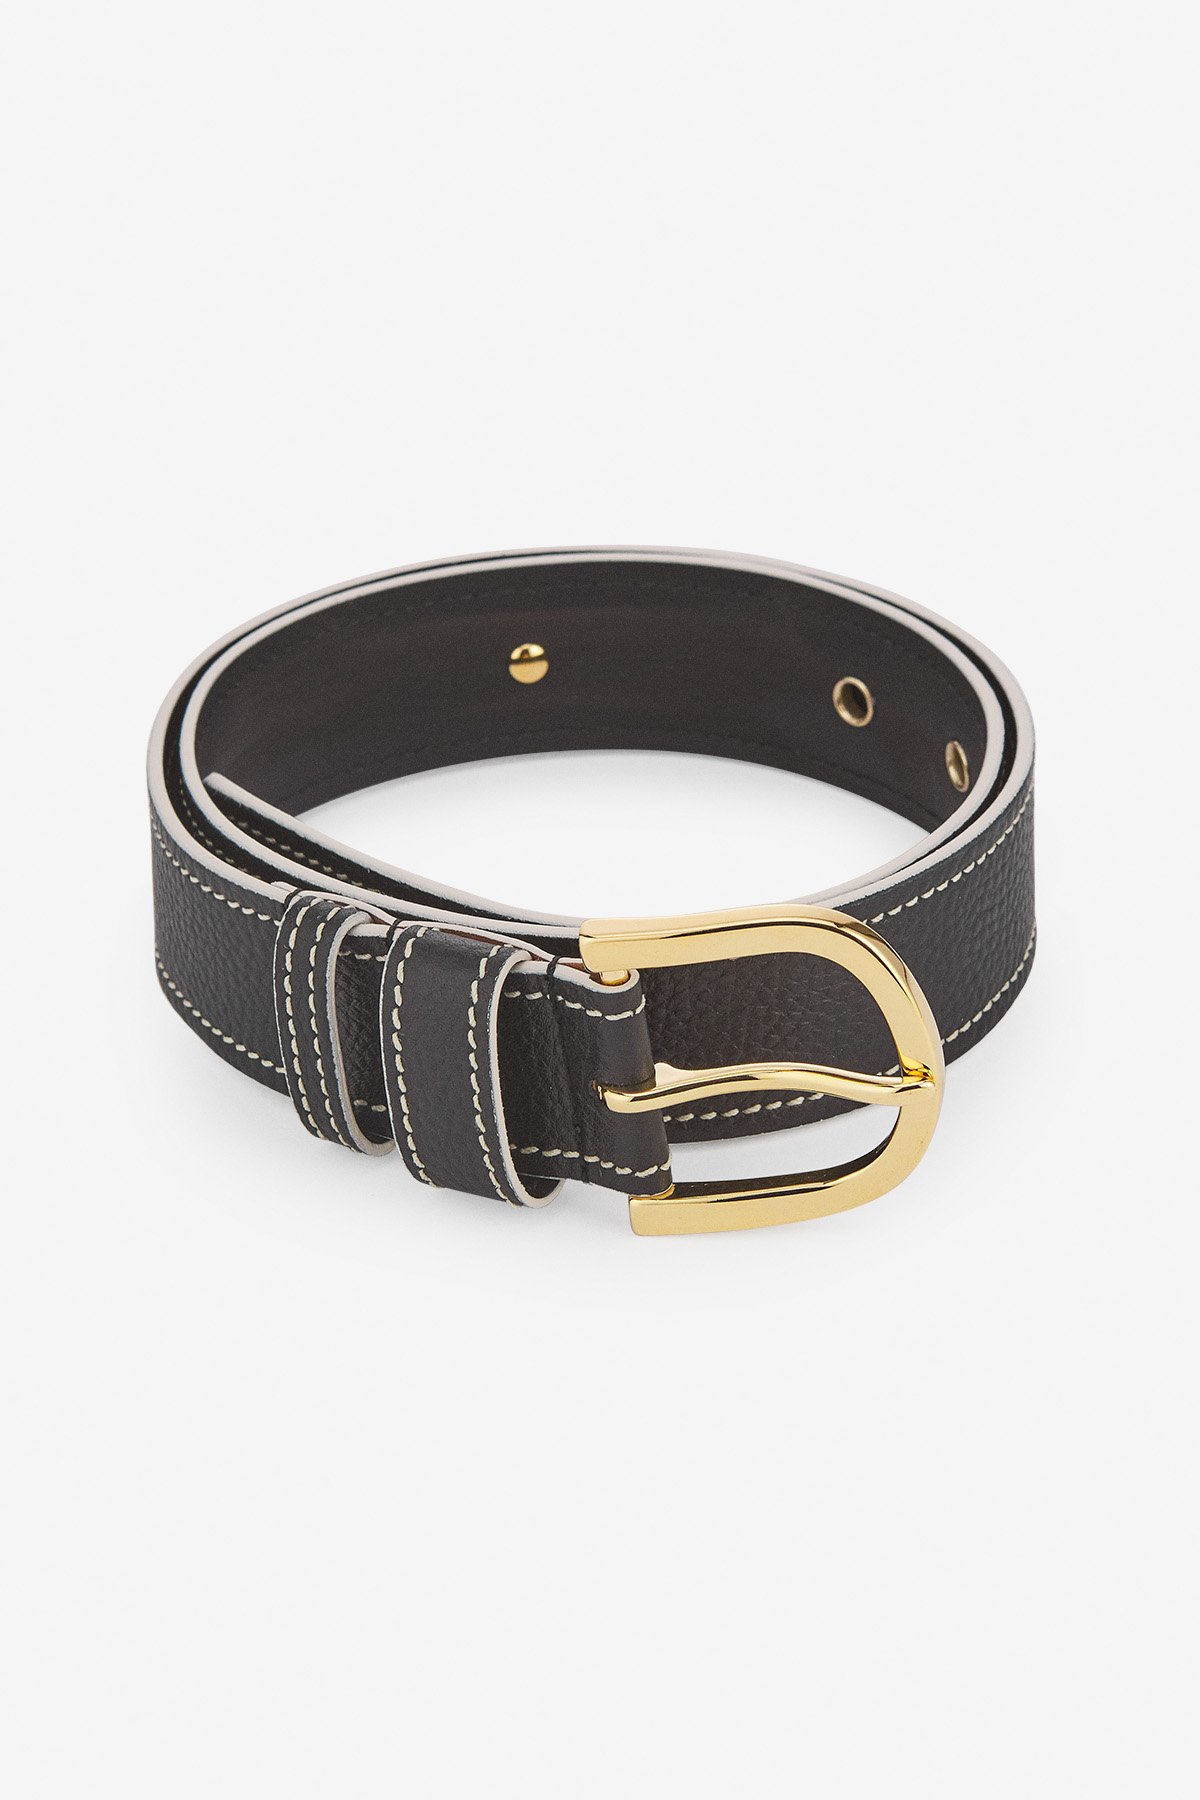 Leather belt with saddle stitches